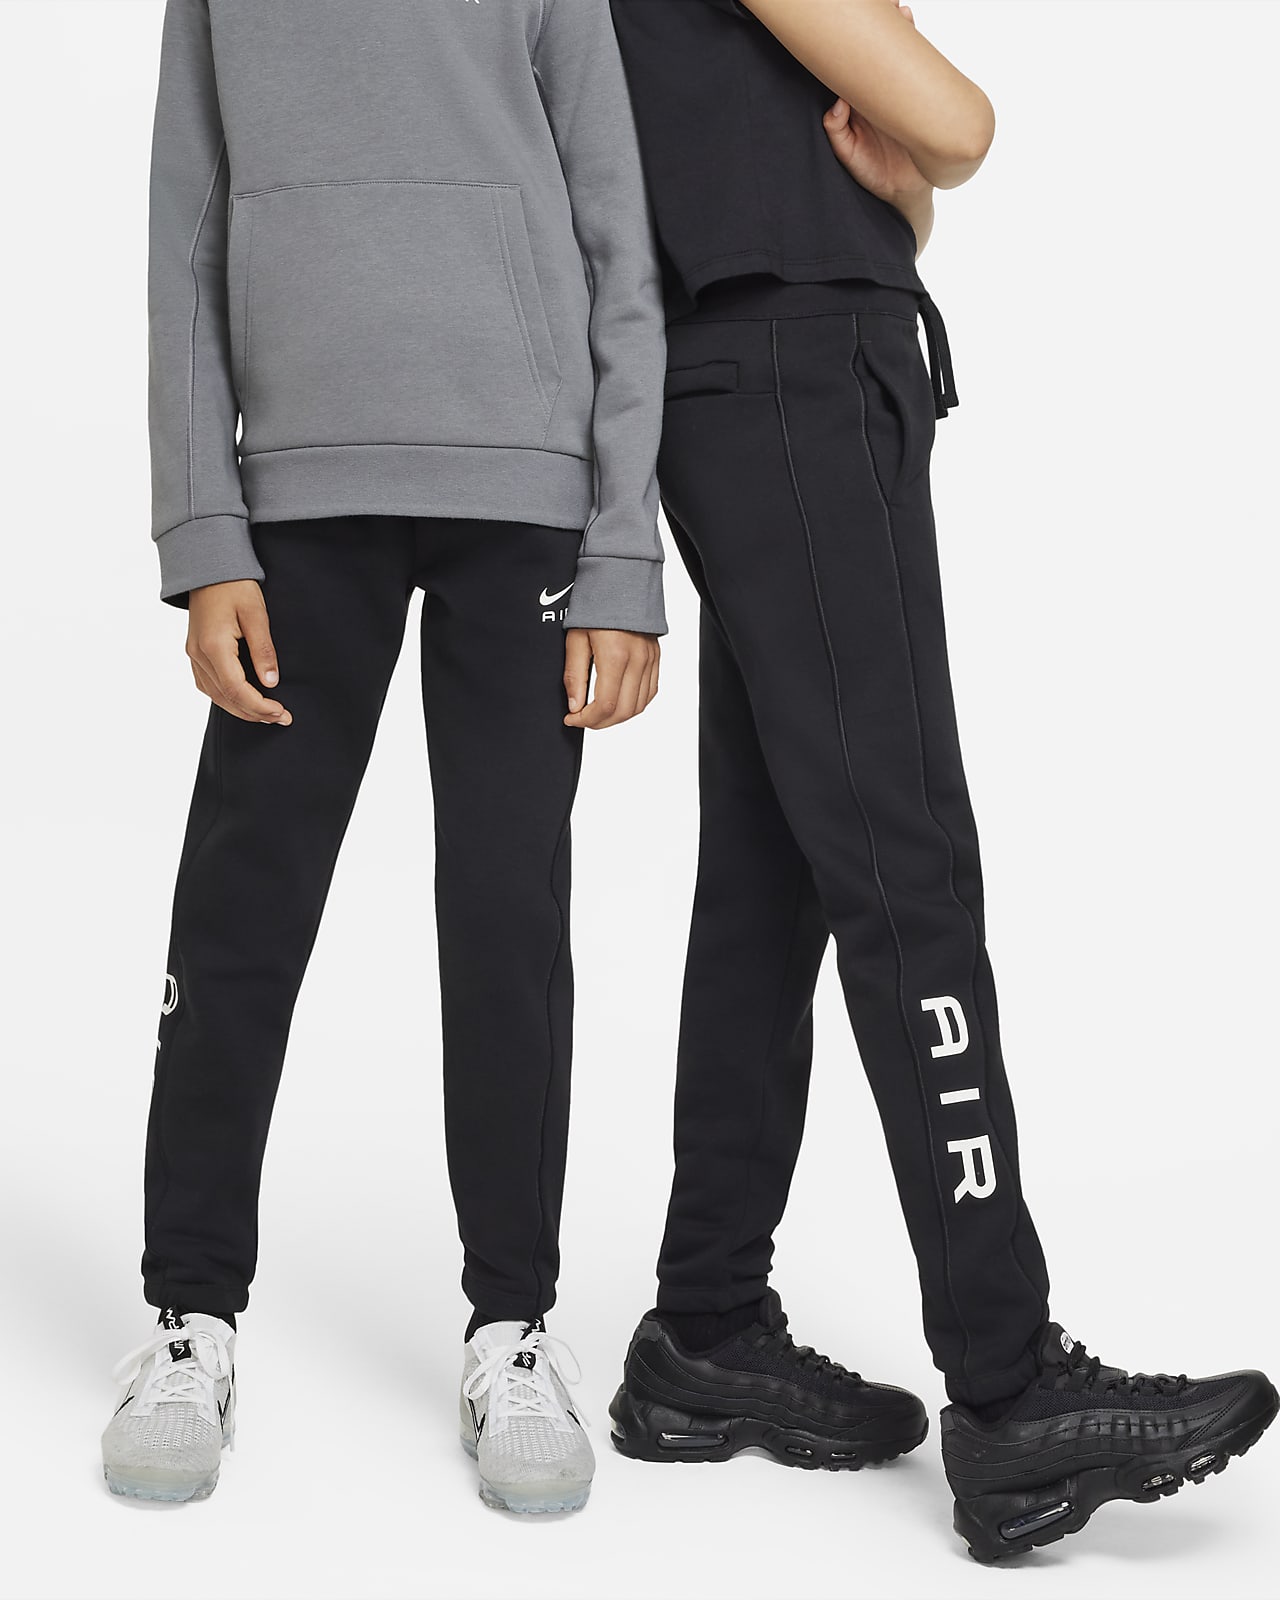 Spodnie dla dużych dzieci Nike Air